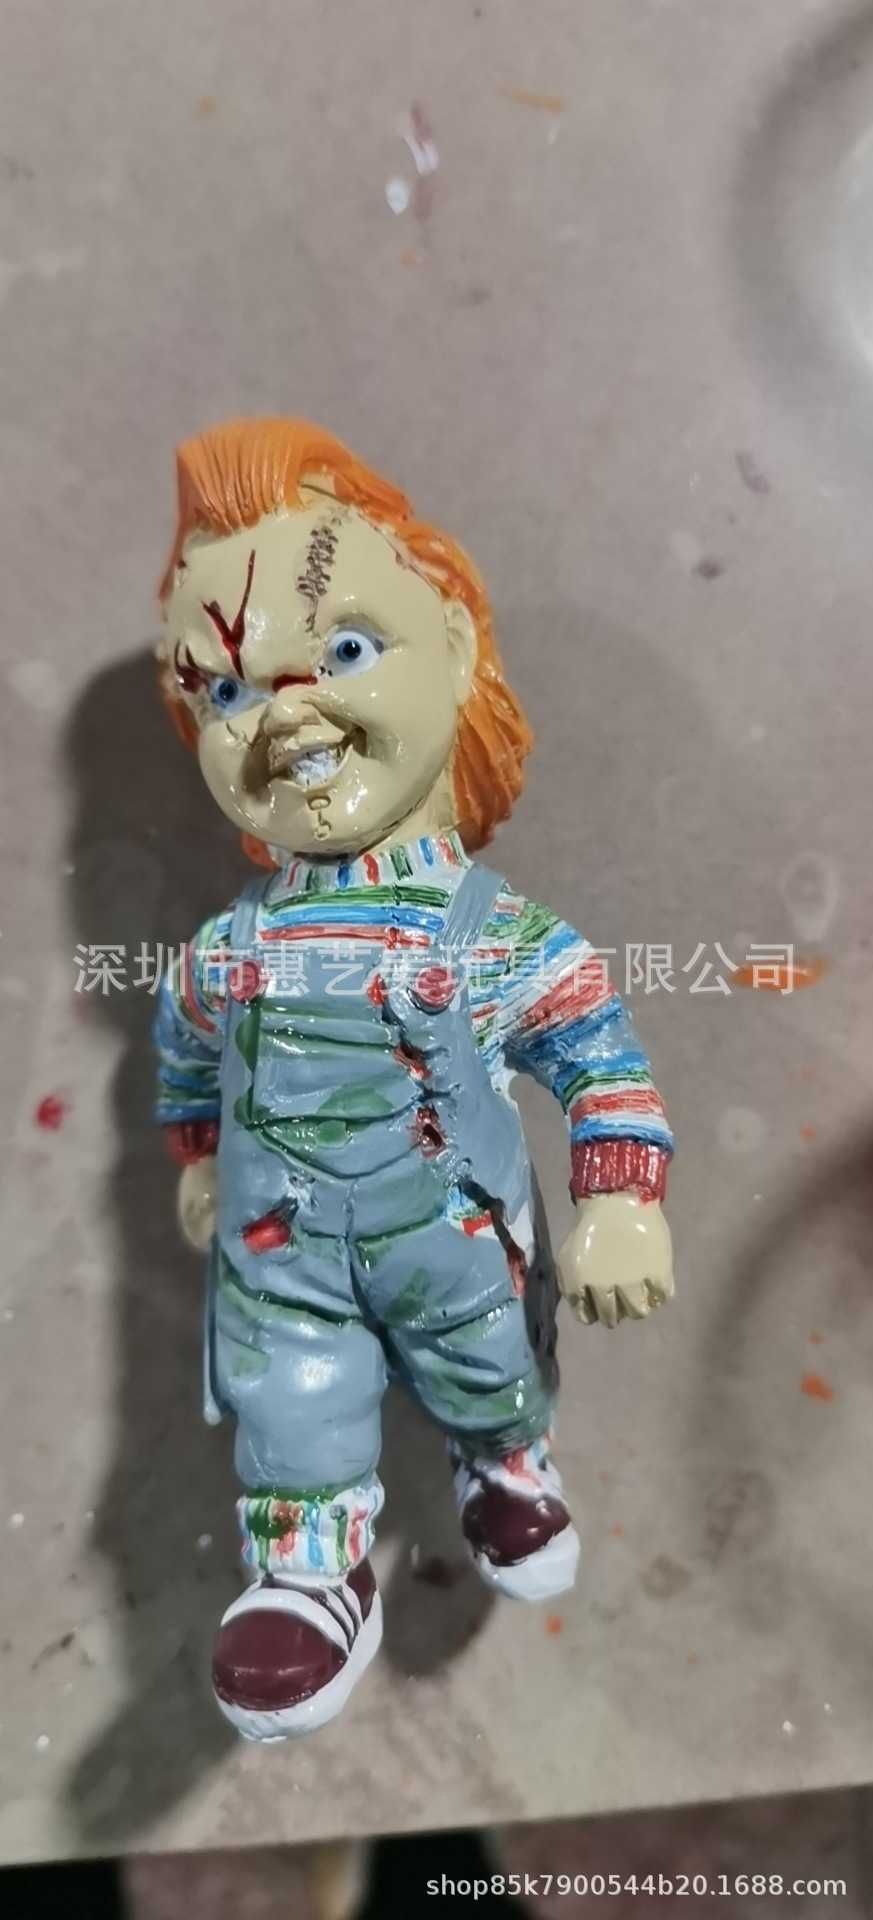 Chucky Puppe